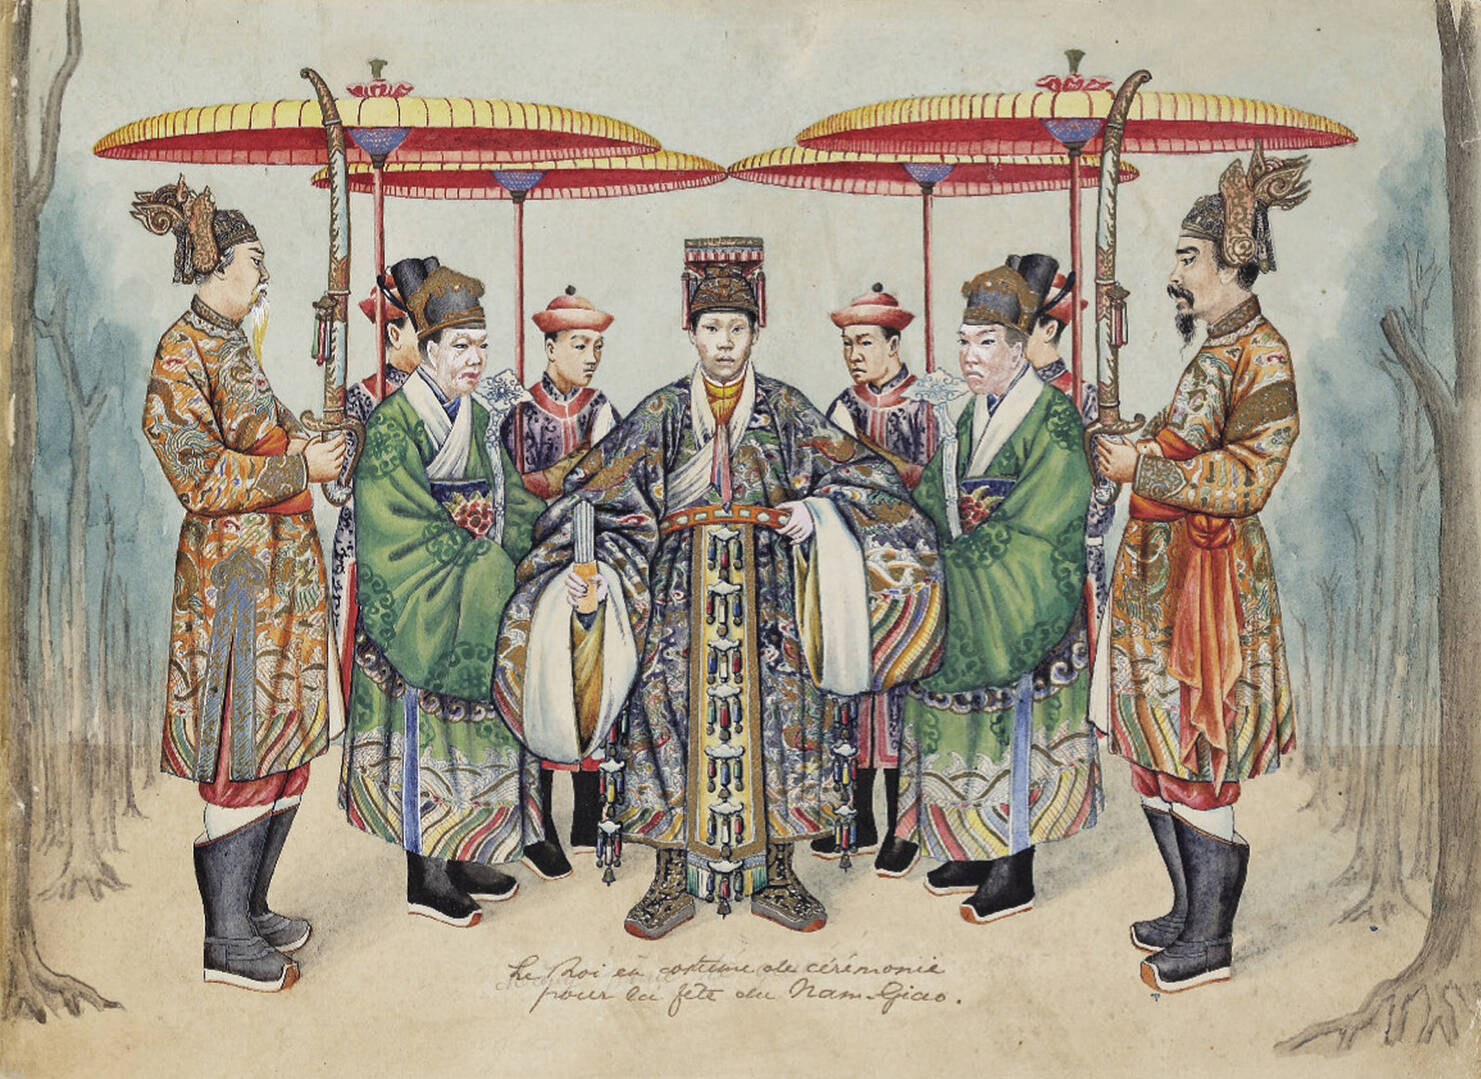 Lễ phục của triều đình An Nam (Grande tenue de la Cour d'Annam) – Tán gẫu về Văn hóa – Lịch sử – Diễn đàn otonet.fun